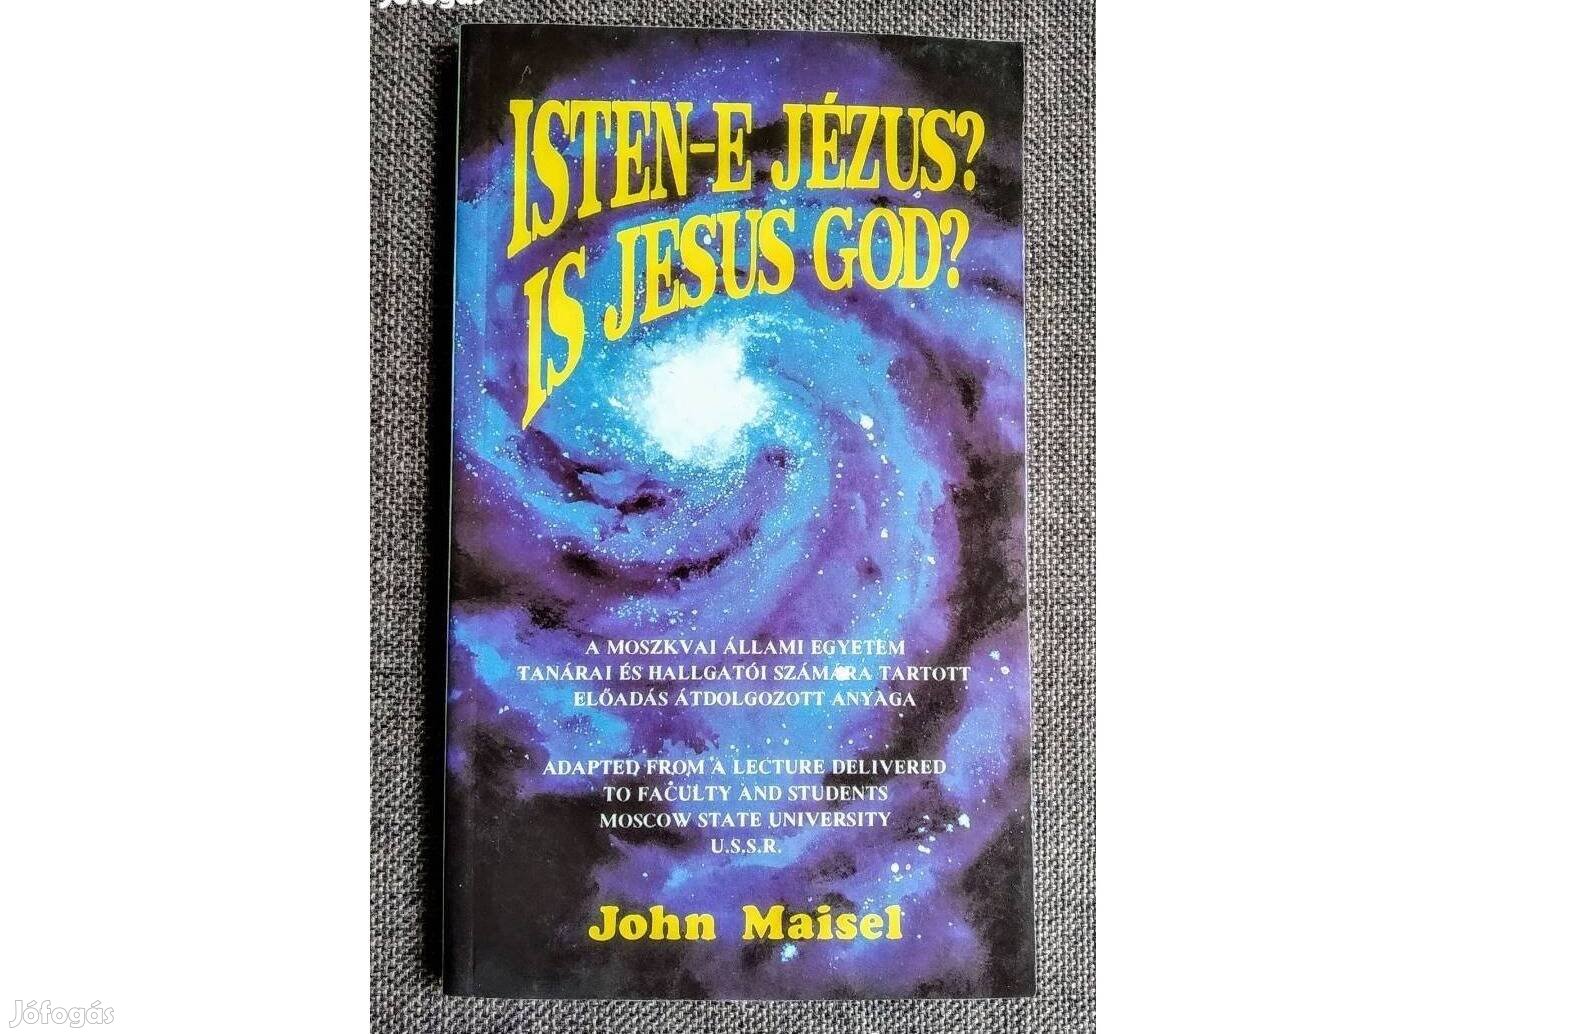 Isten-e Jézus? - Is Jesus God? John Maisel Magyar és angol